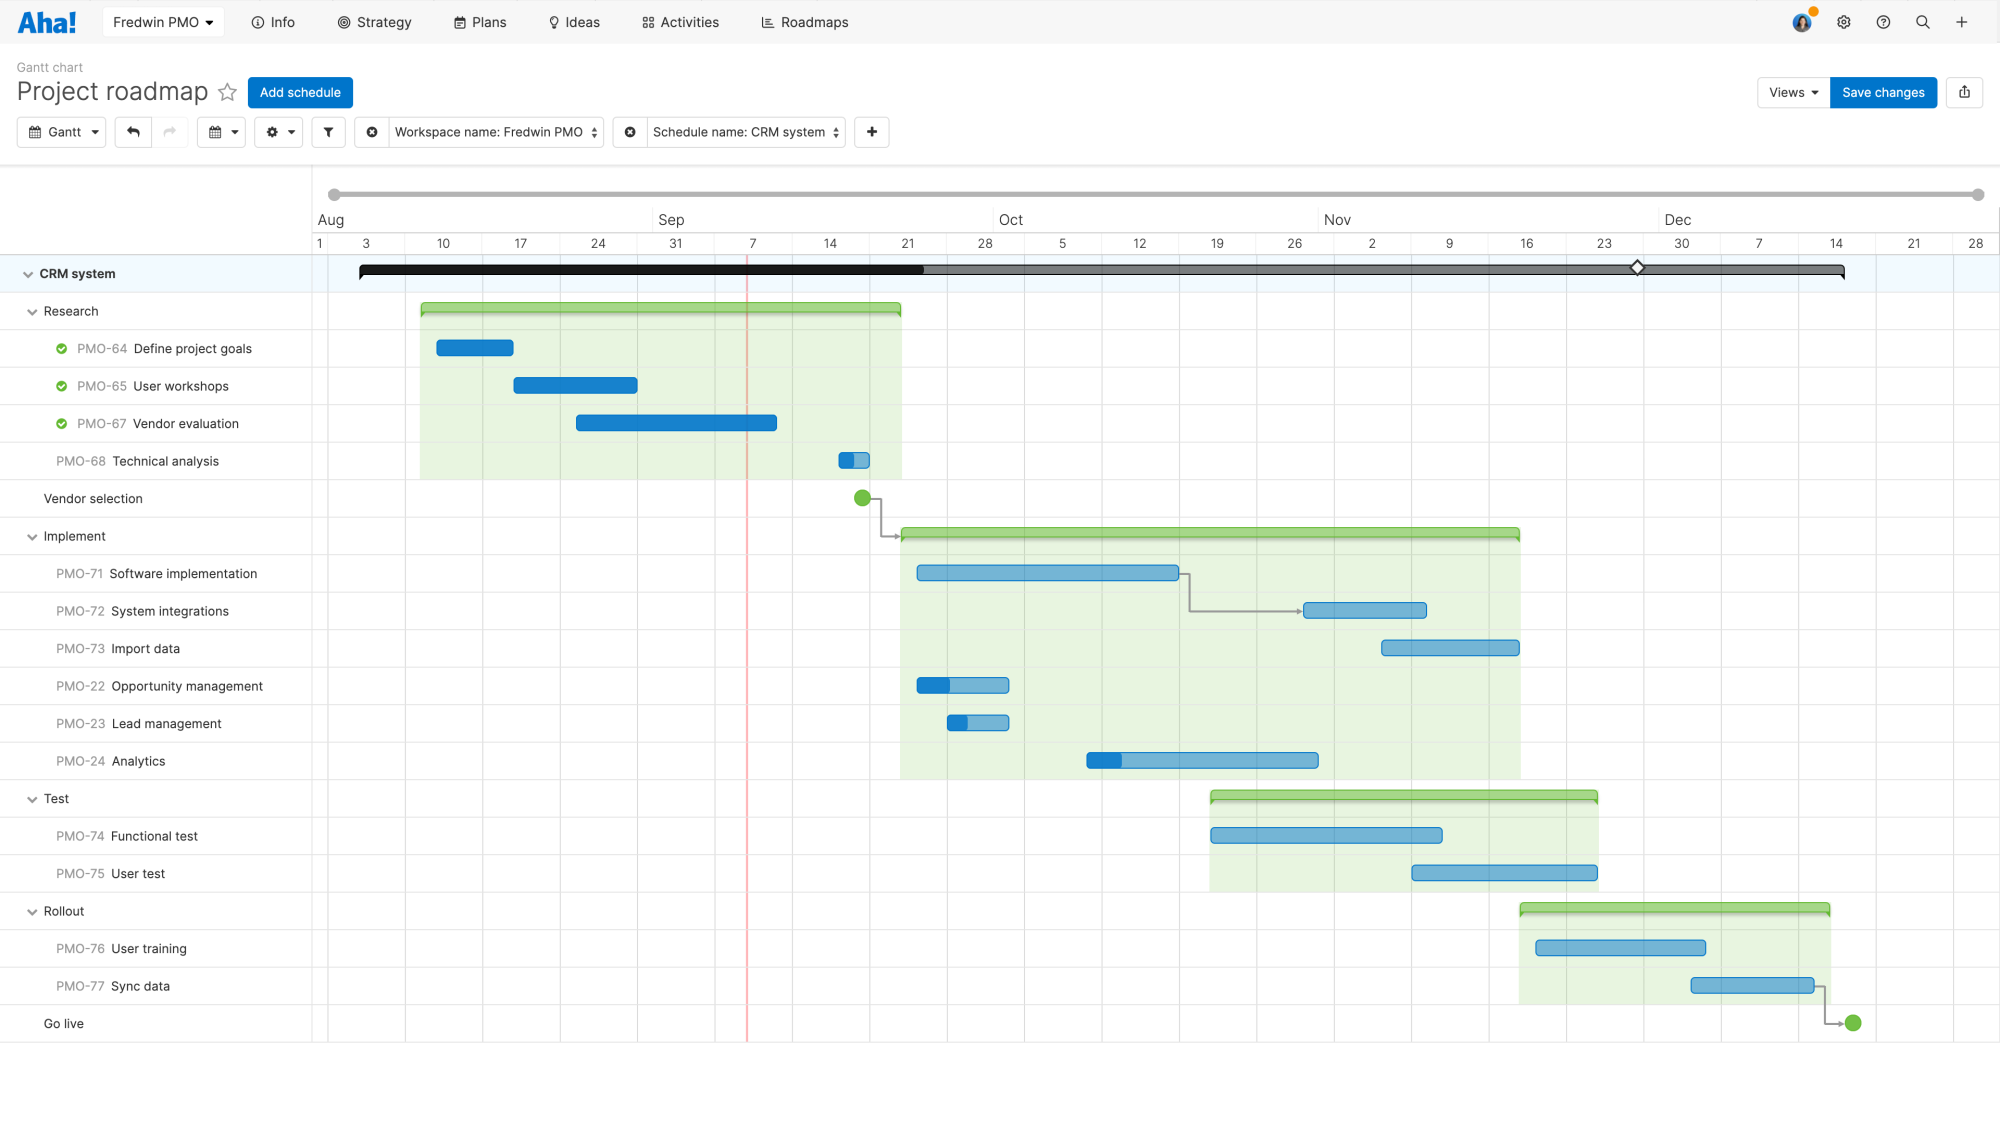 Gantt chart-style project roadmap in Aha! Roadmaps